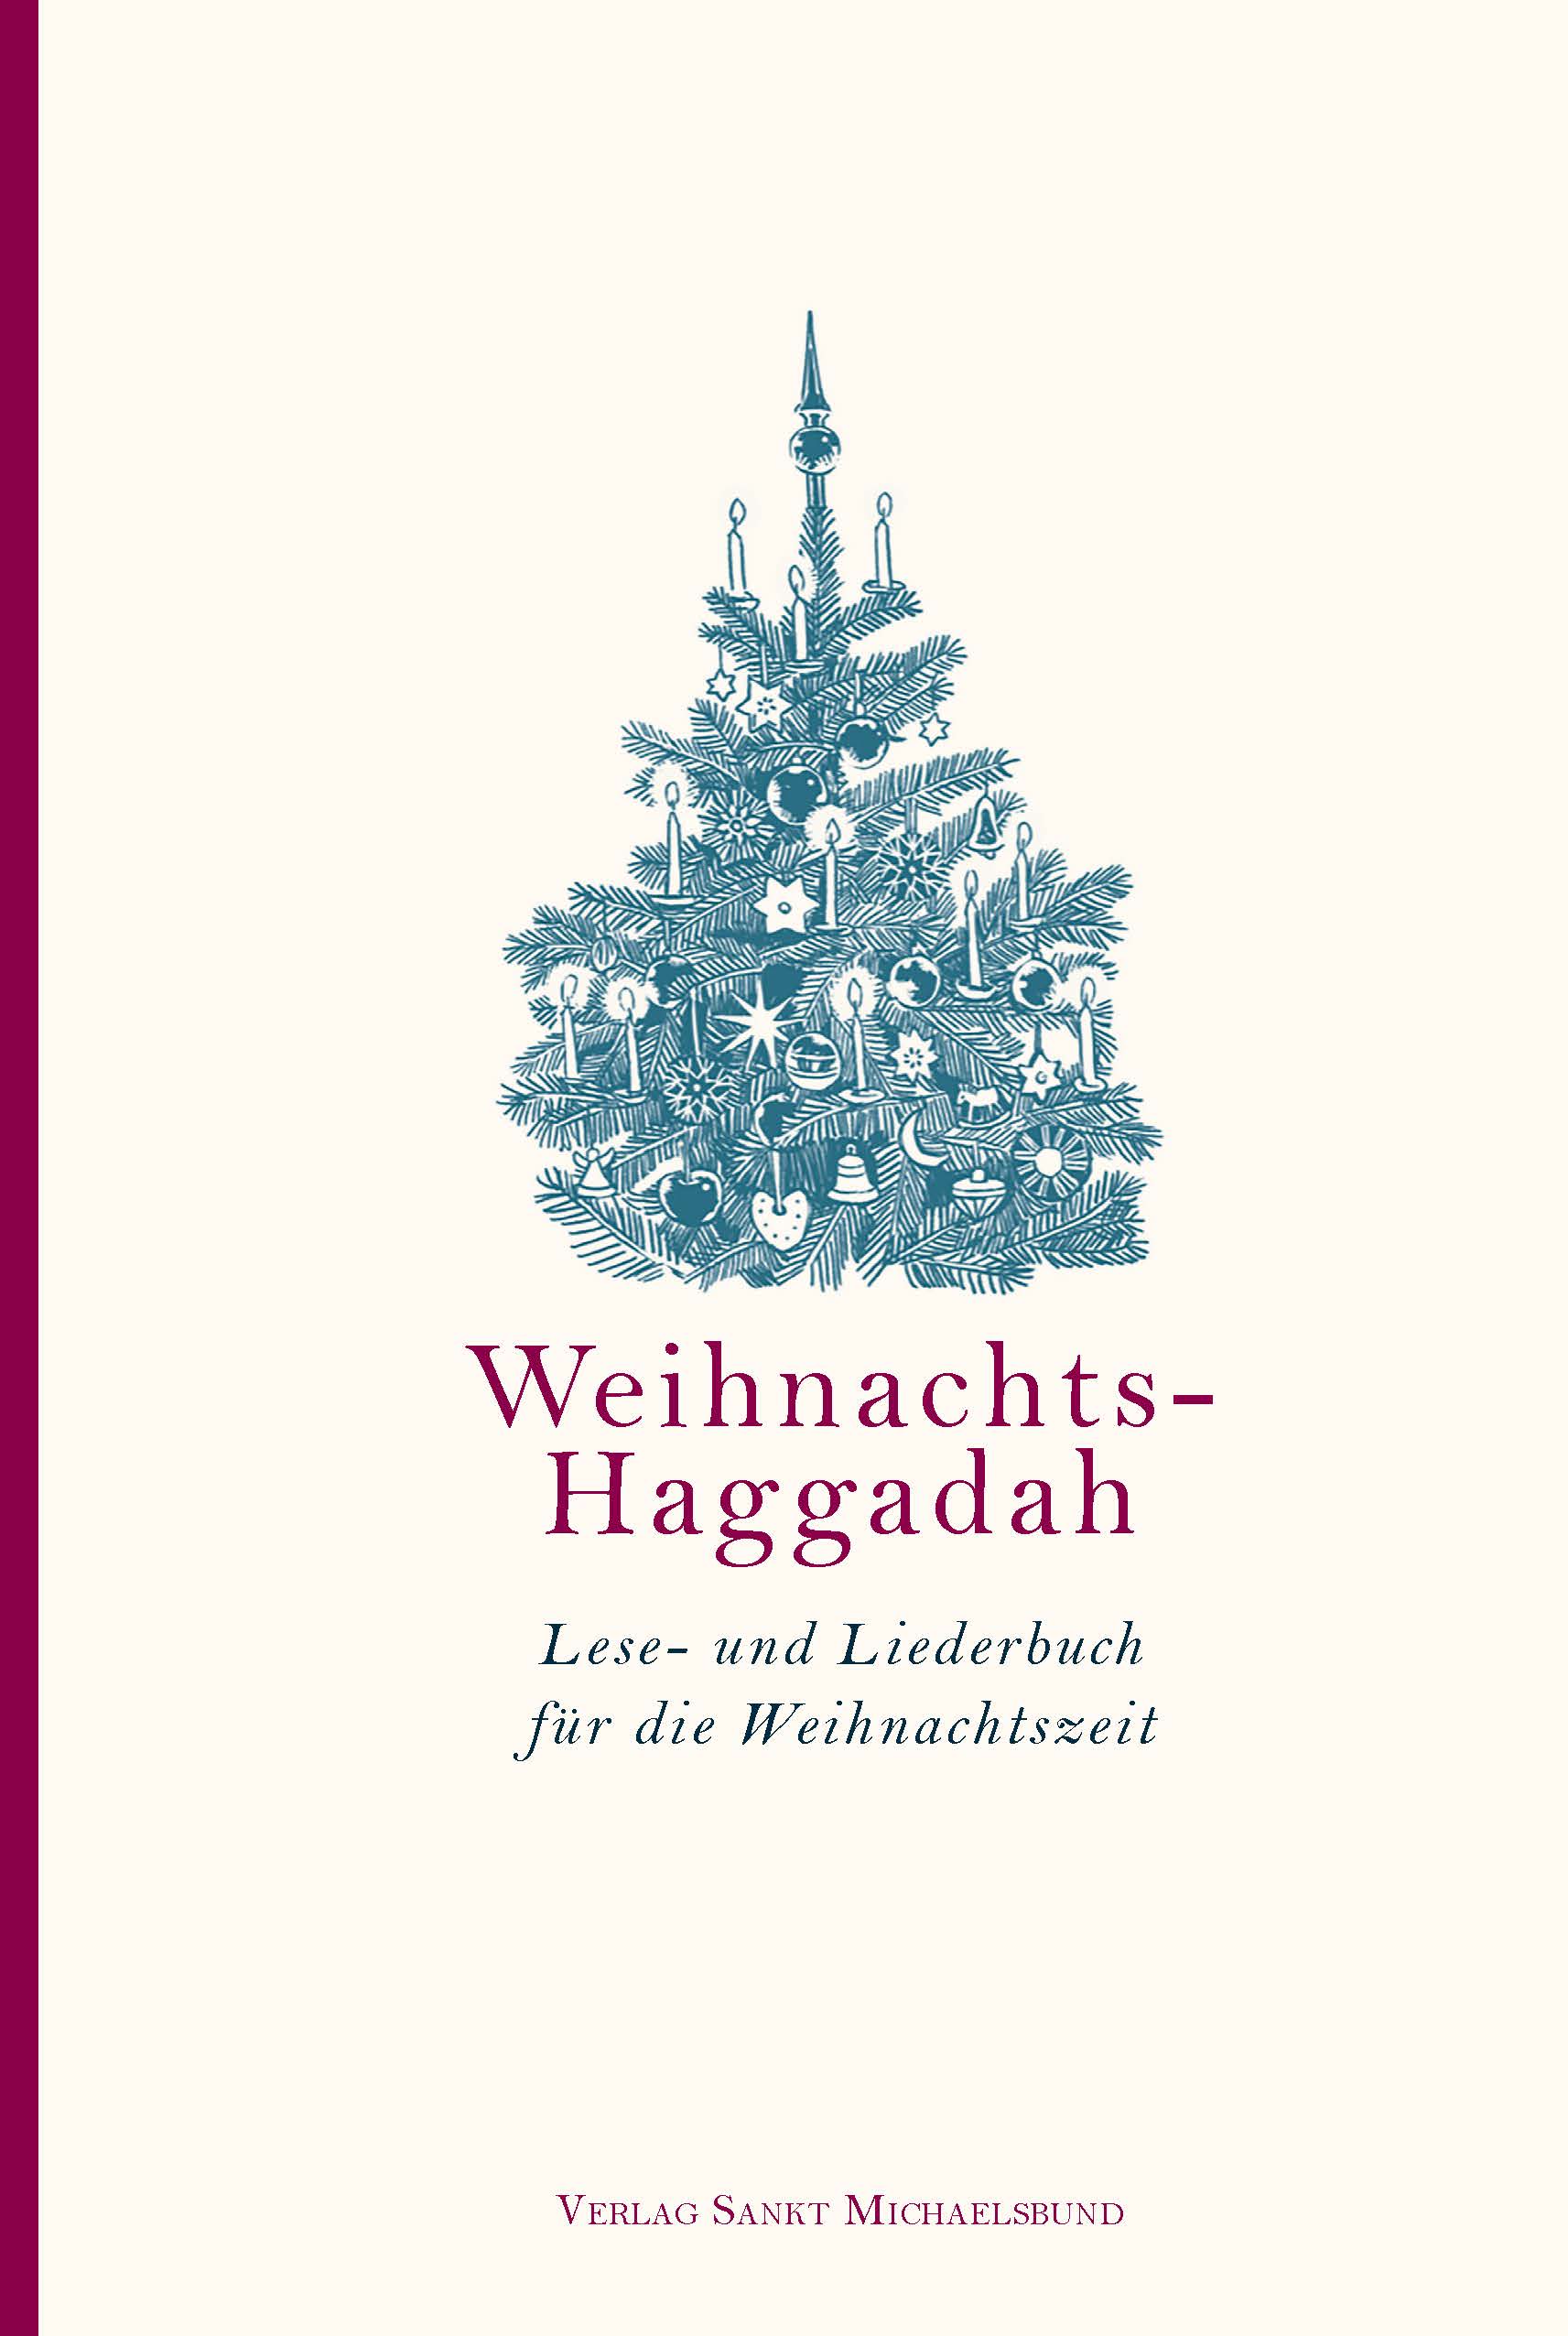 Schroedter-Albers/Wolffsohn: Weihnachts-Haggadah (Michaelsbund 2023)